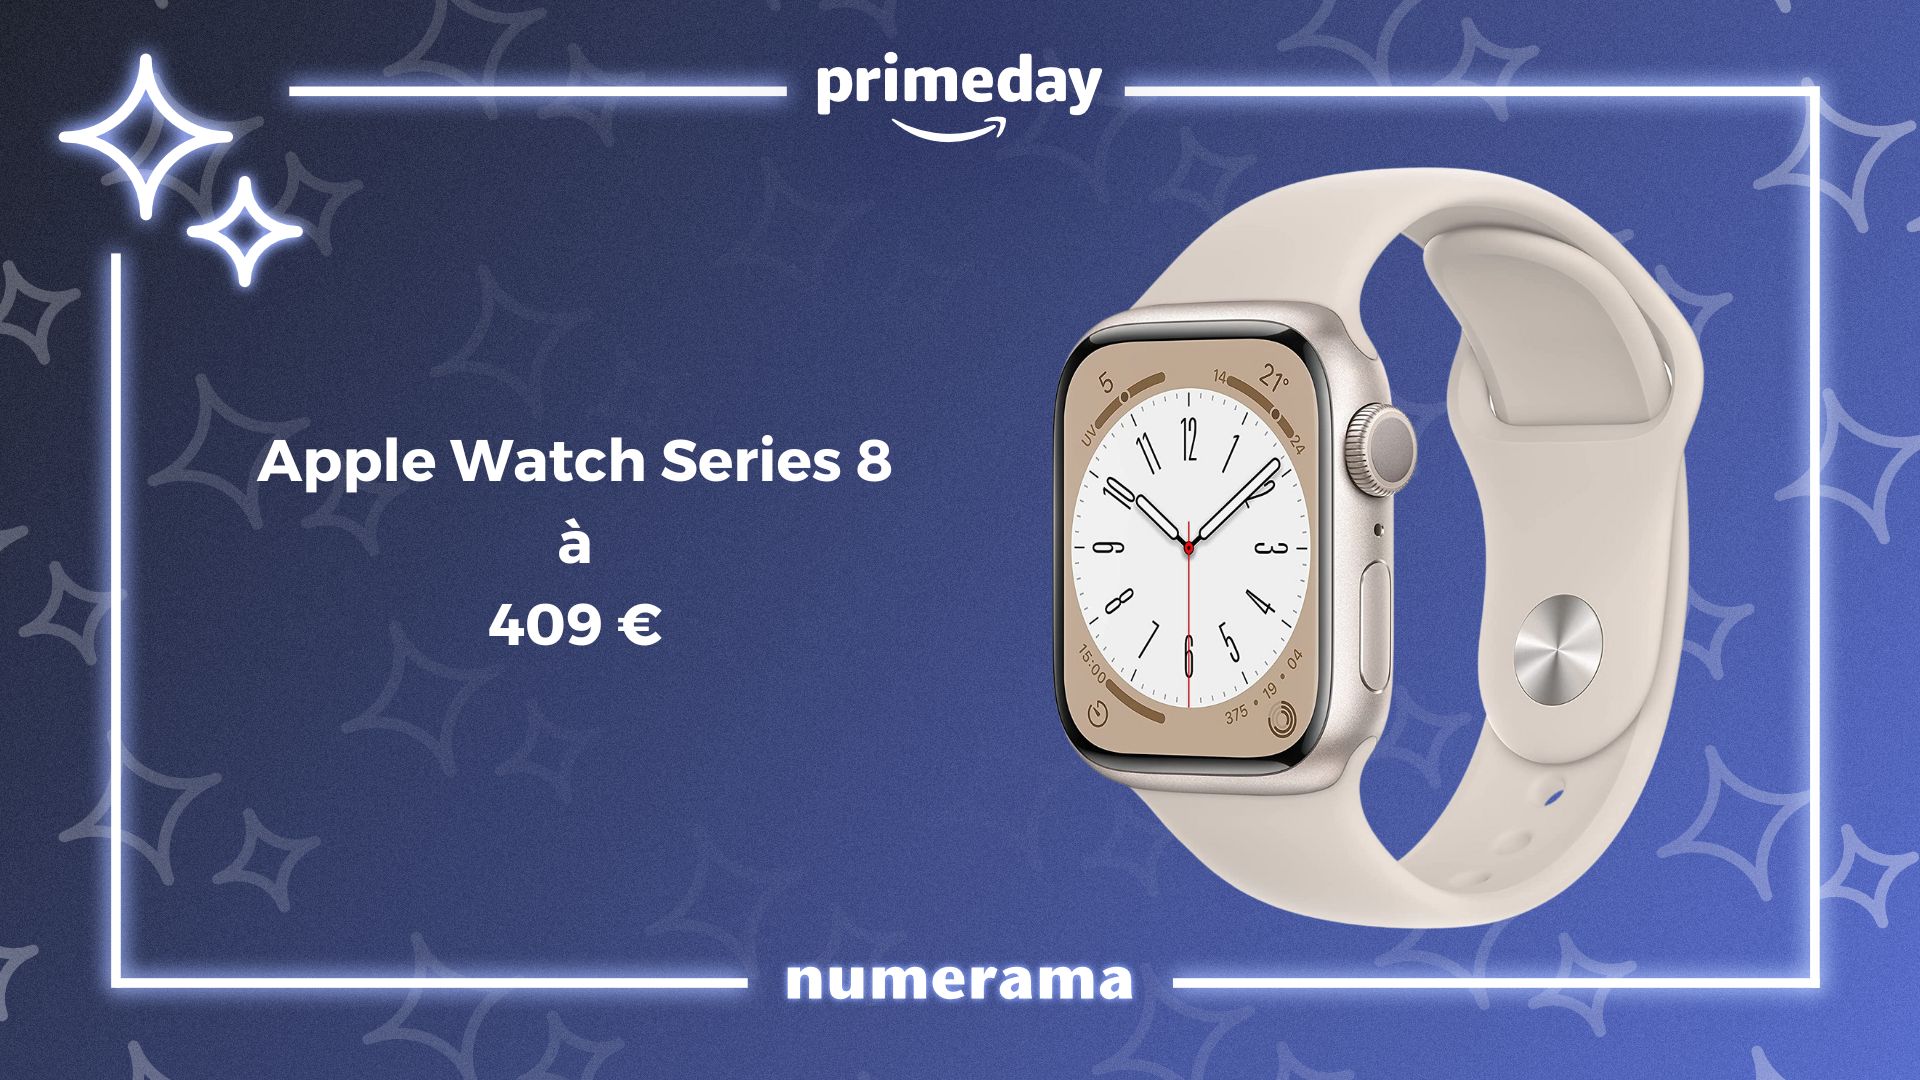 Retrouvez l'Echo Dot 5 et son horloge à moins de 40€ à quelques jours de  Prime Day